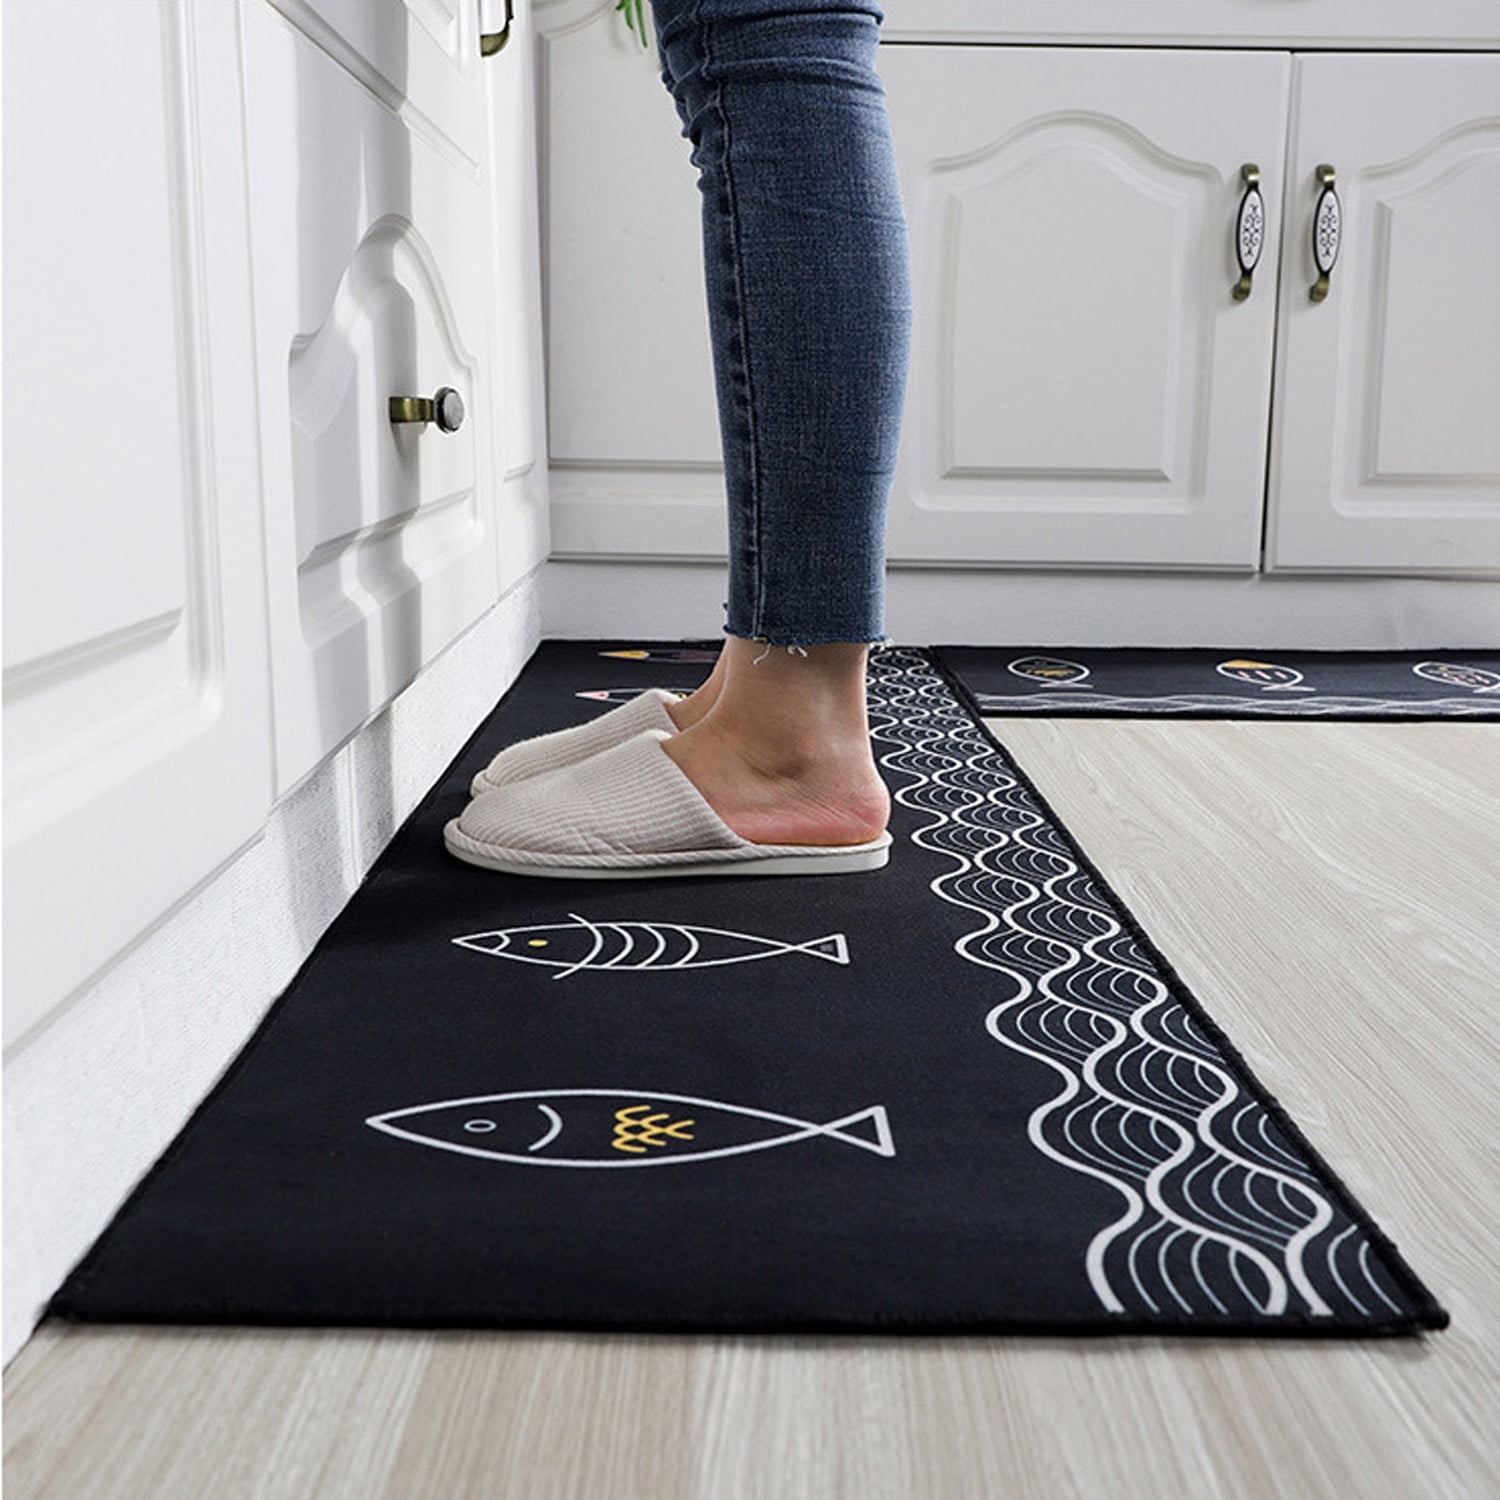 2 Nonslip Floor Carpet Kitchen Mat Doormat Bath Bed Office Decor Area Rug Chef 